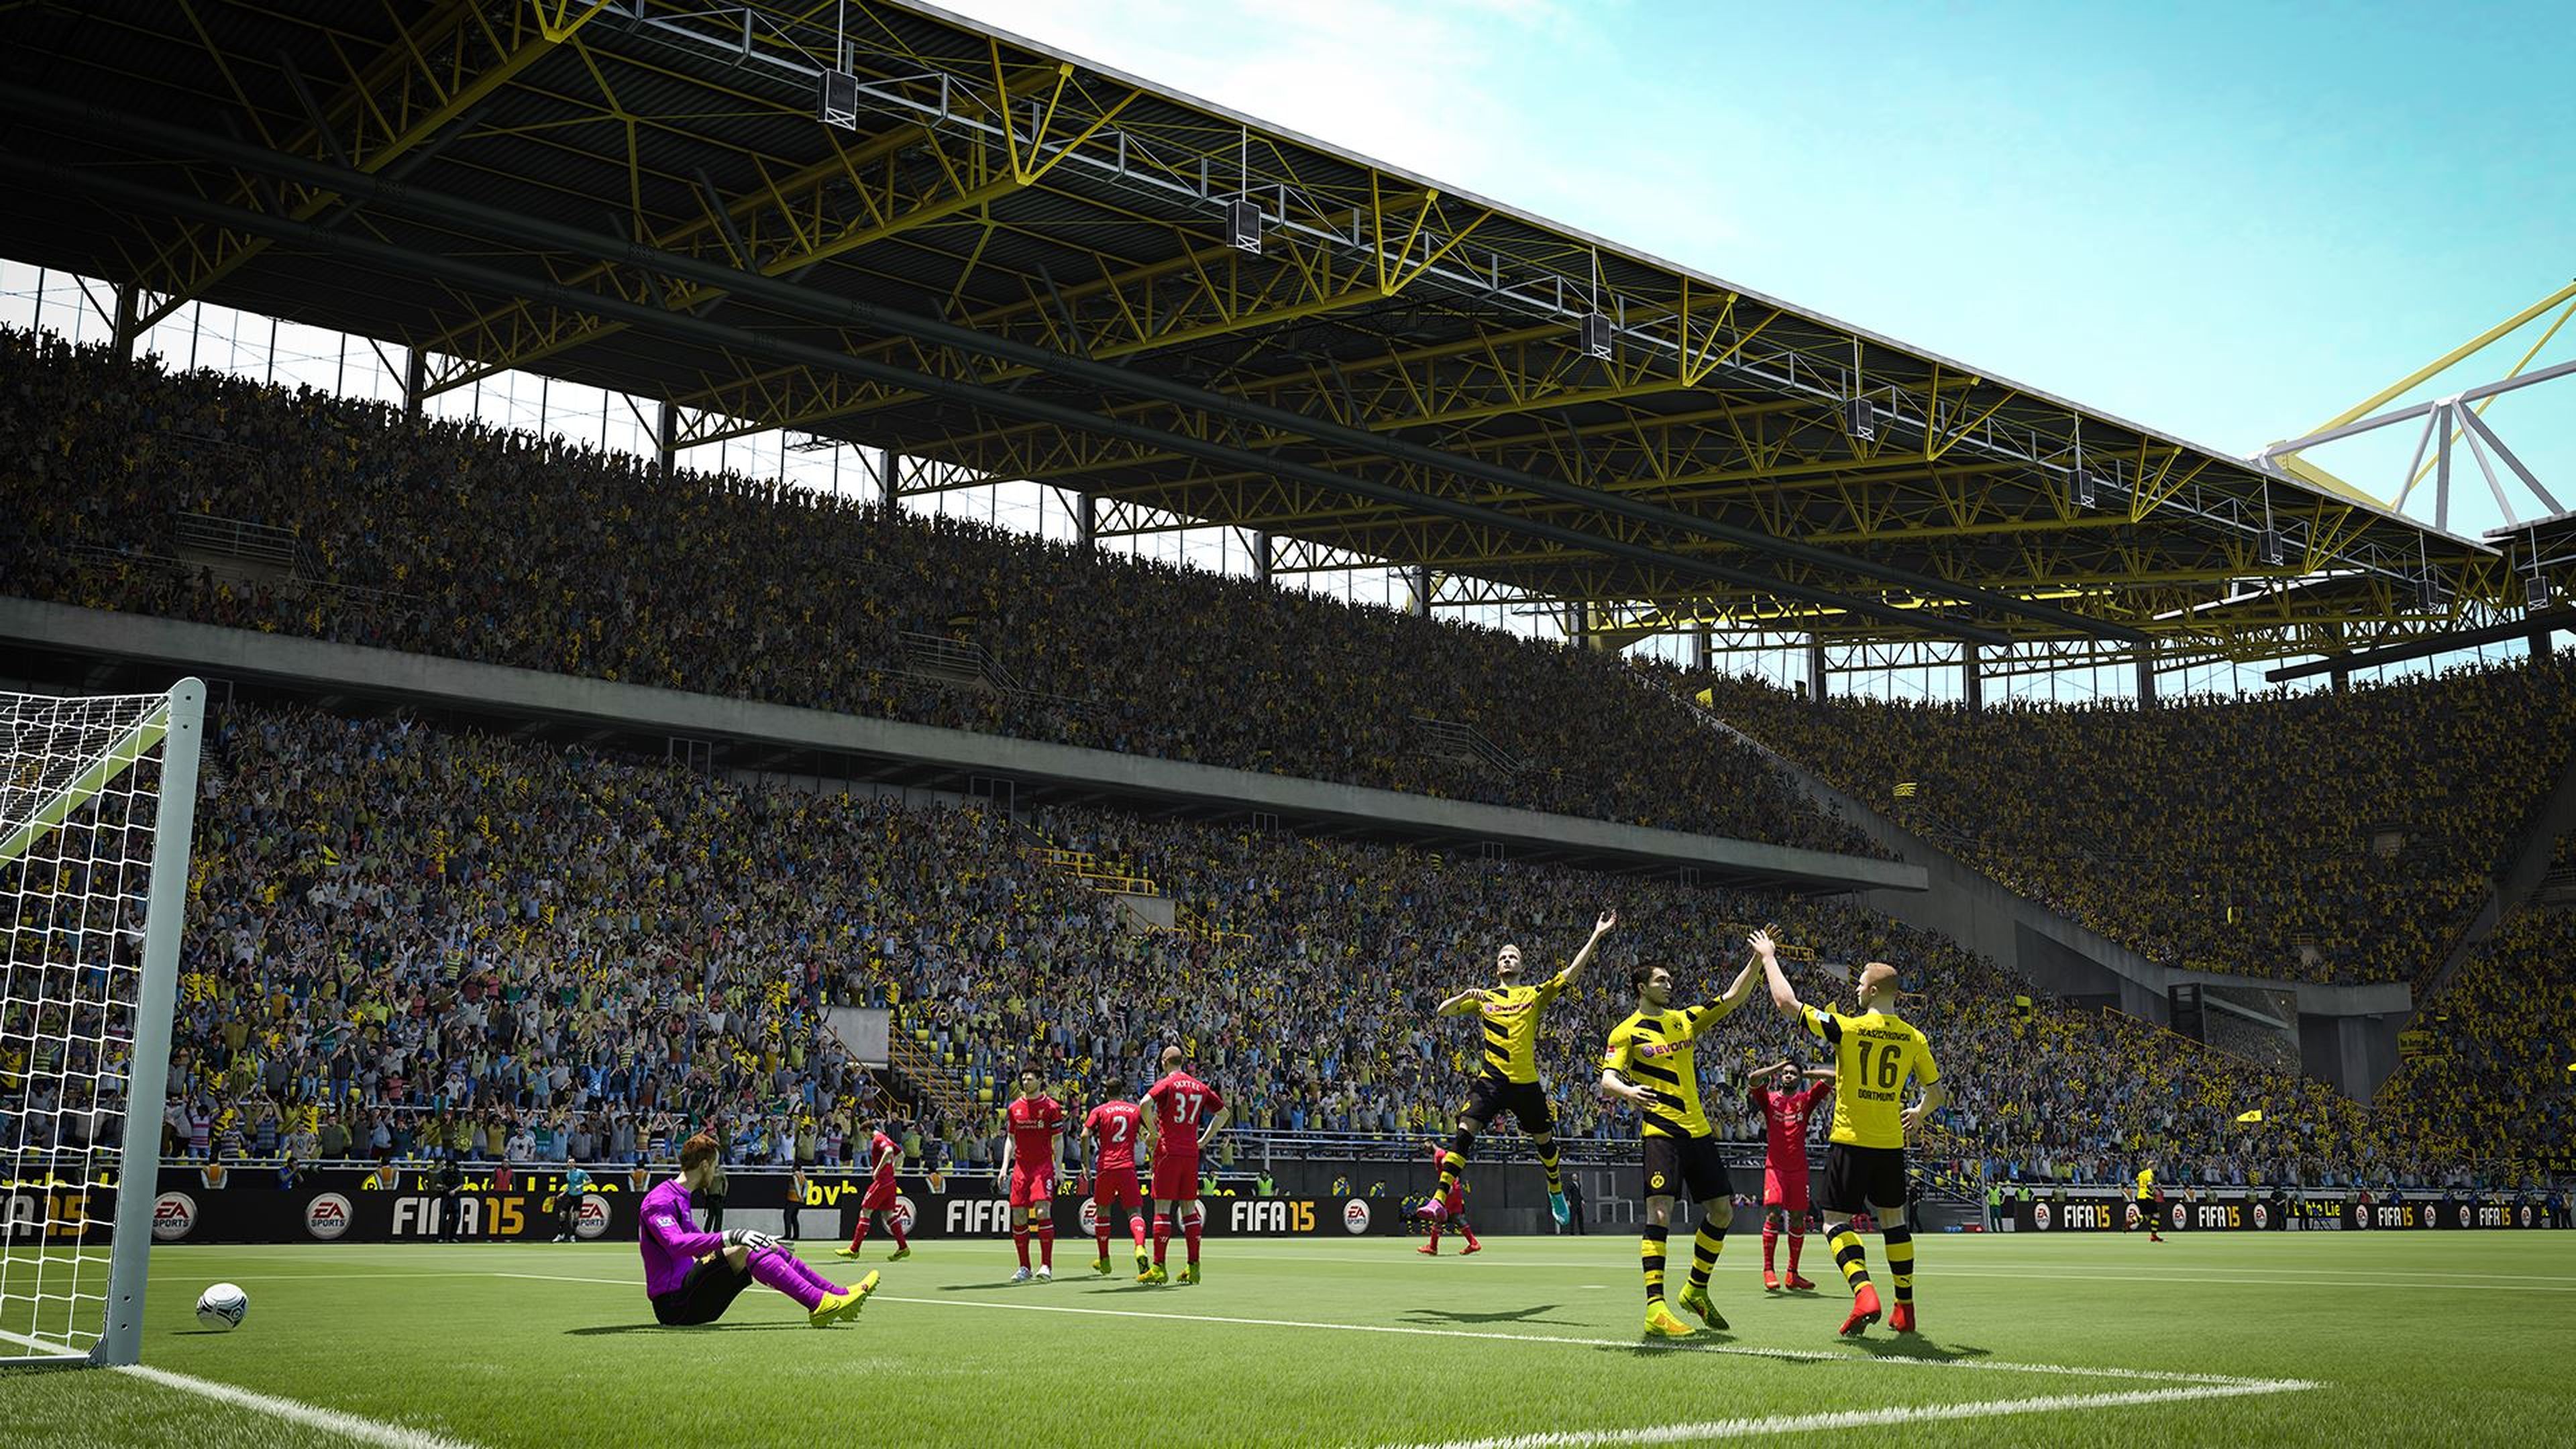 FIFA 15 - Best Goals of the Week - Round 24